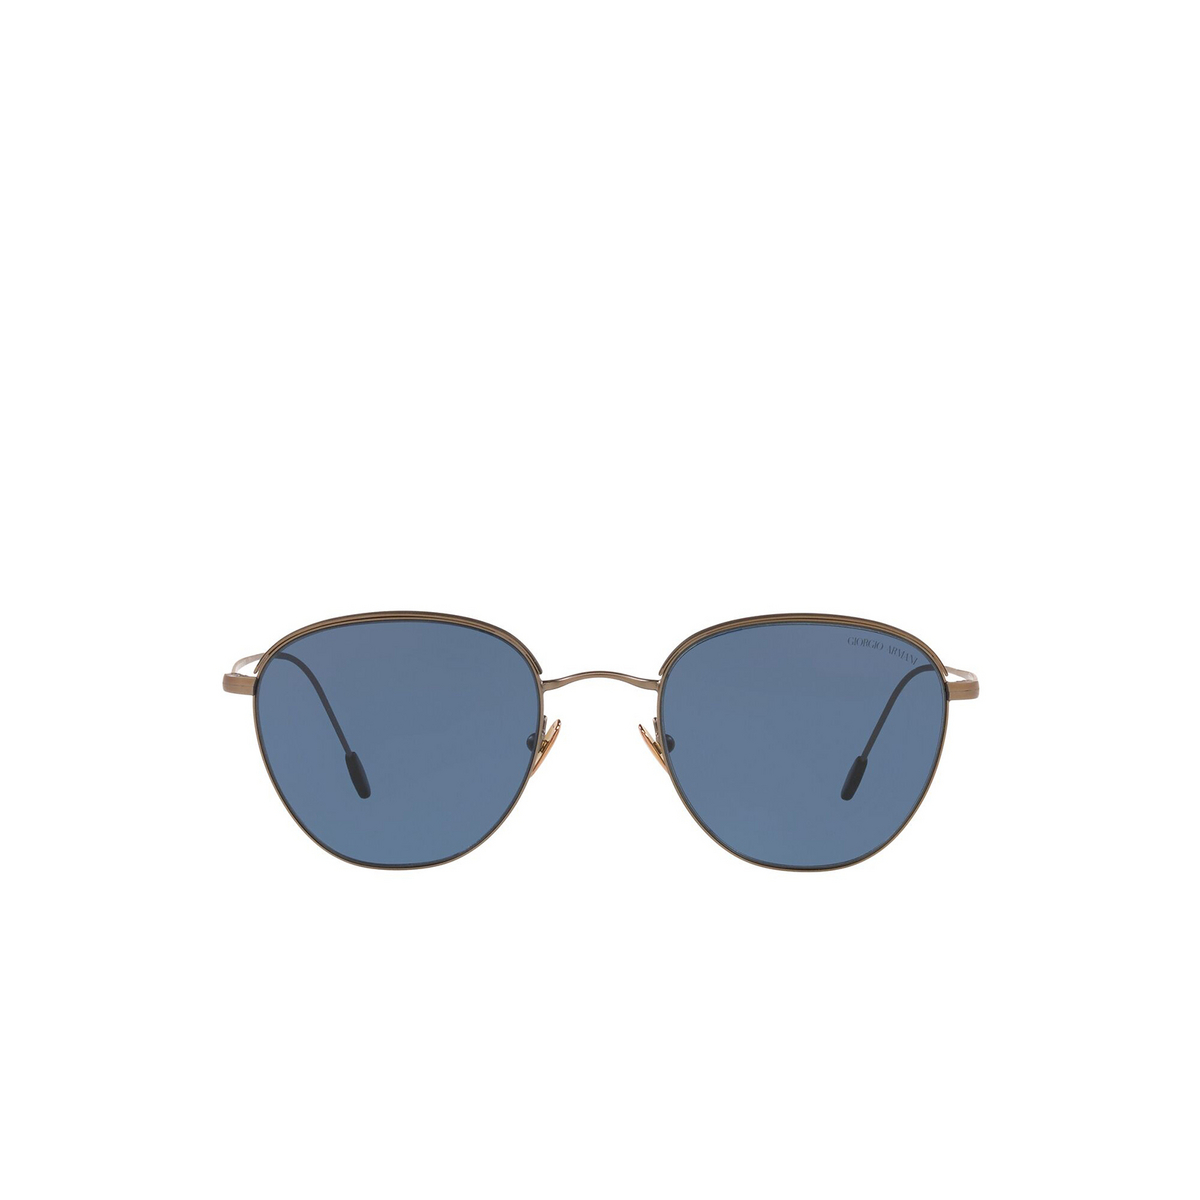 Giorgio Armani® Square Sunglasses: AR6048 color Matte Bronze / Matte Black 300680 - front view.